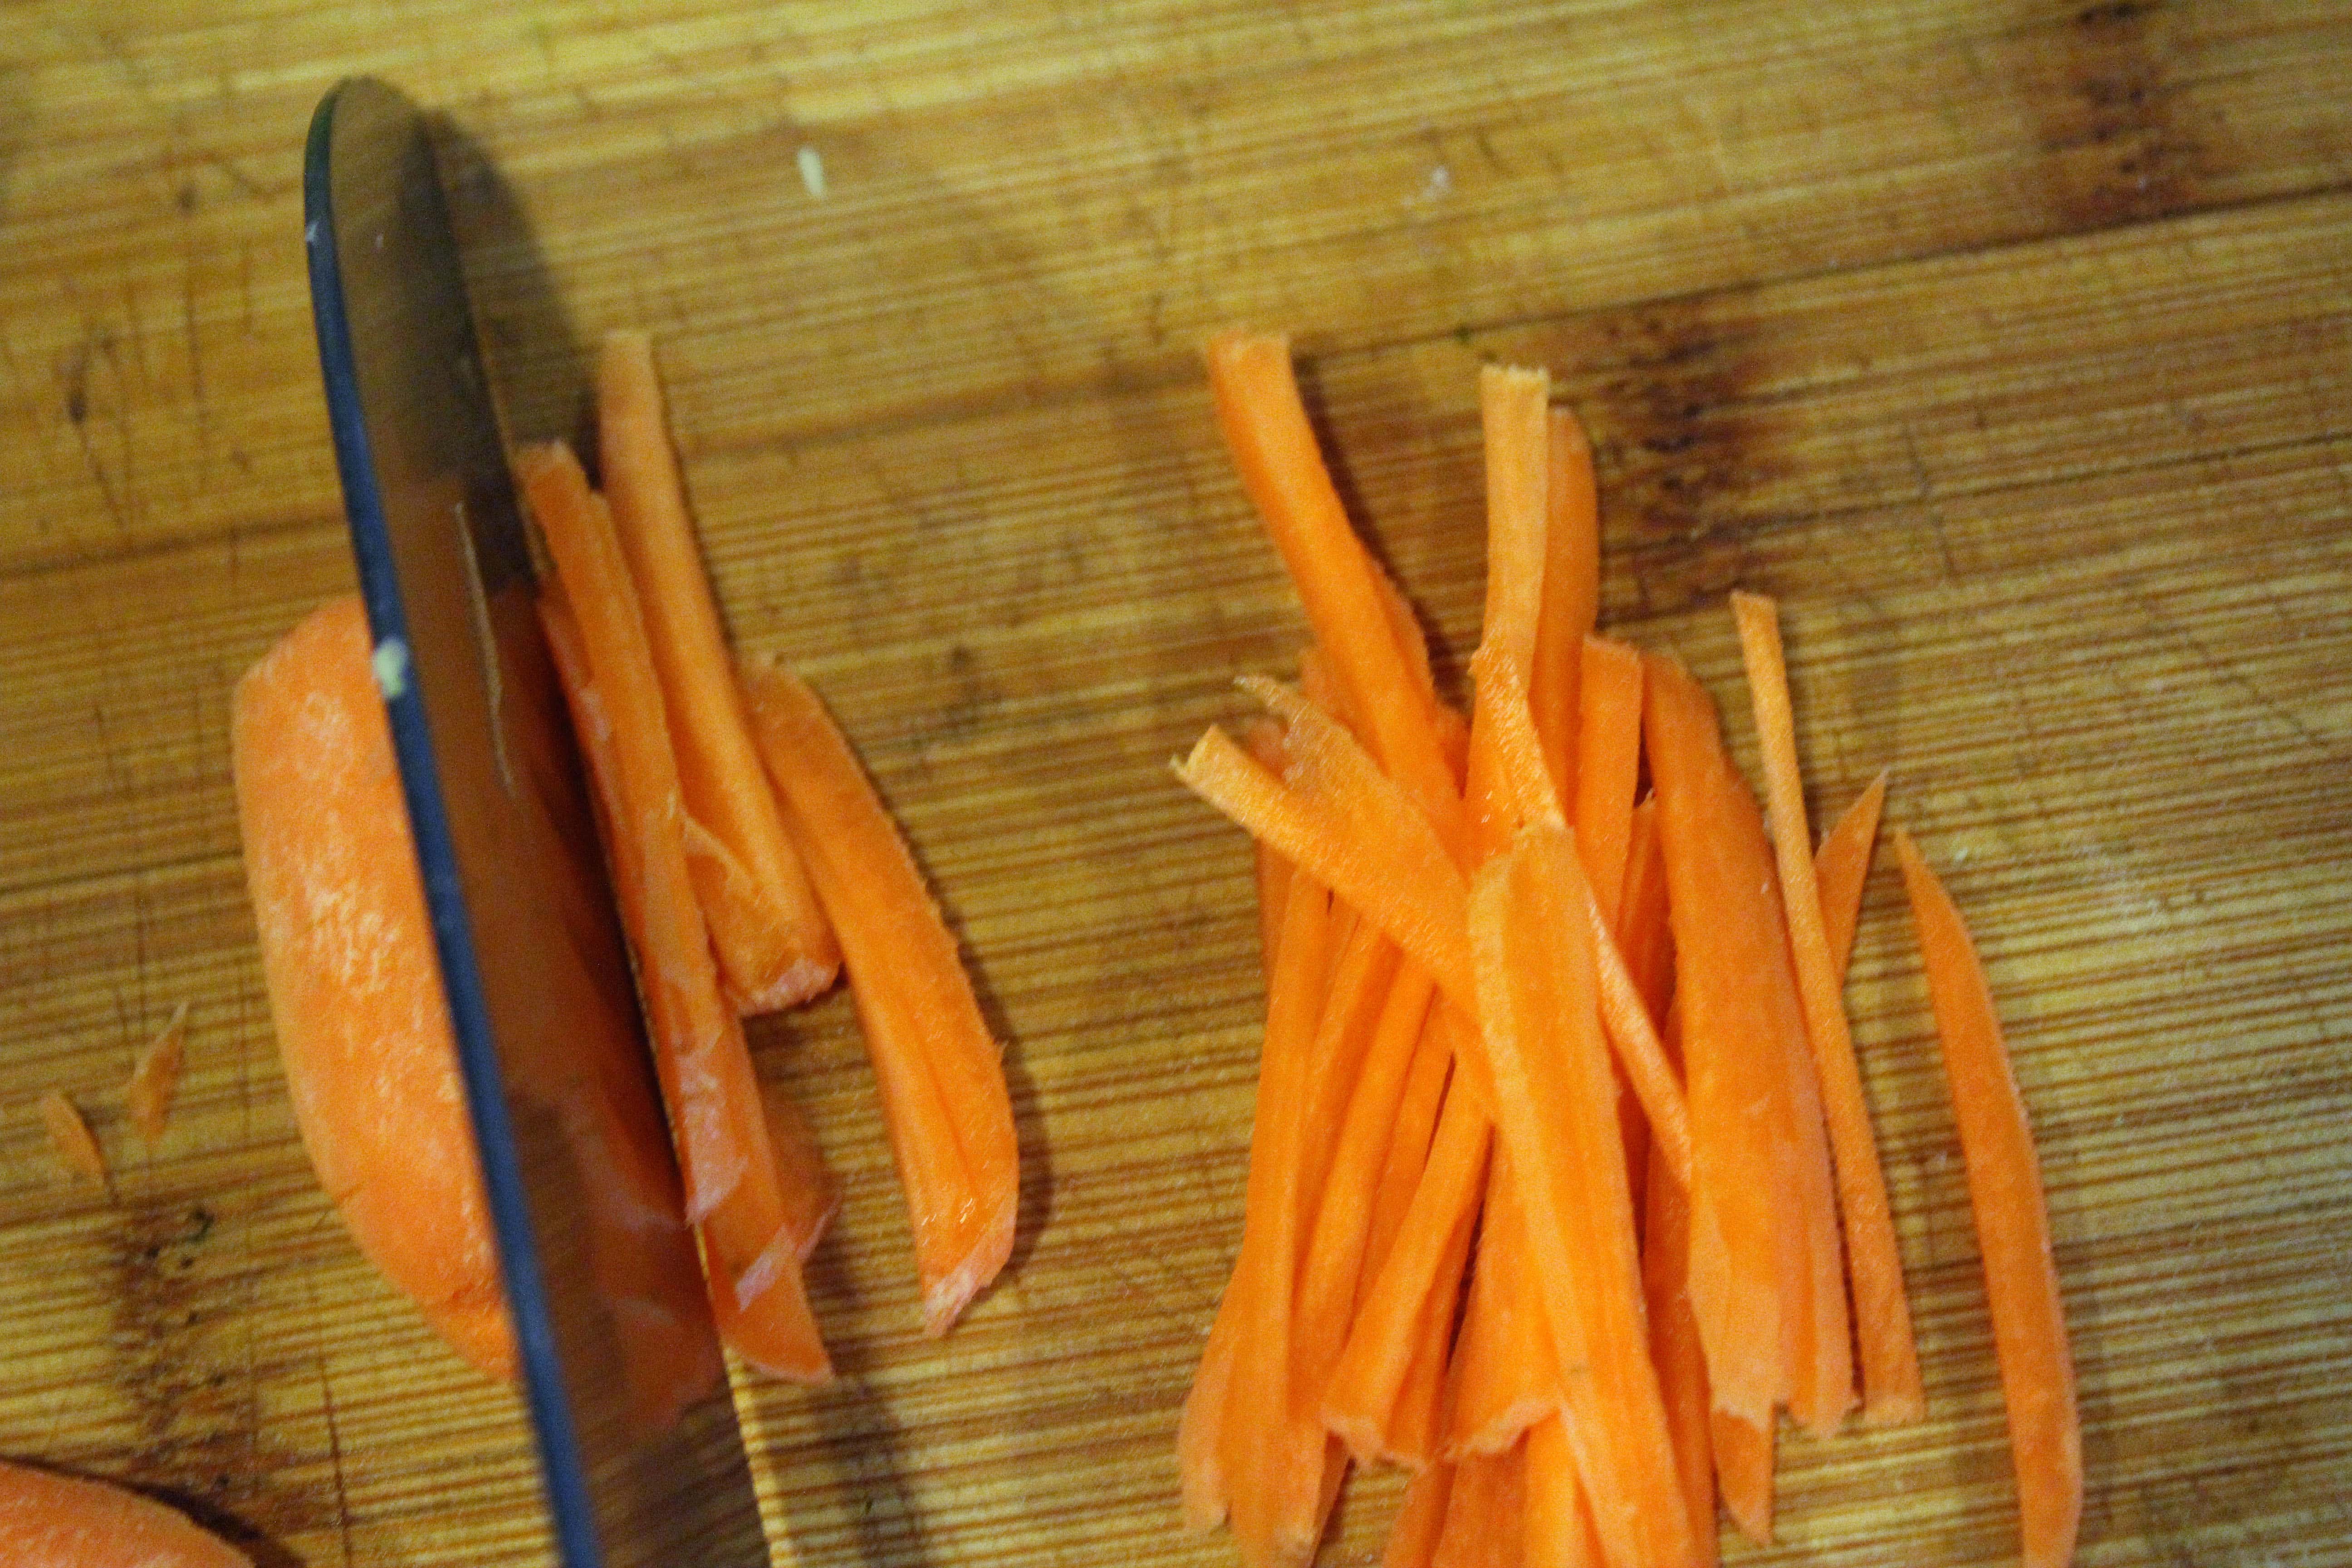 Matchstick carrots